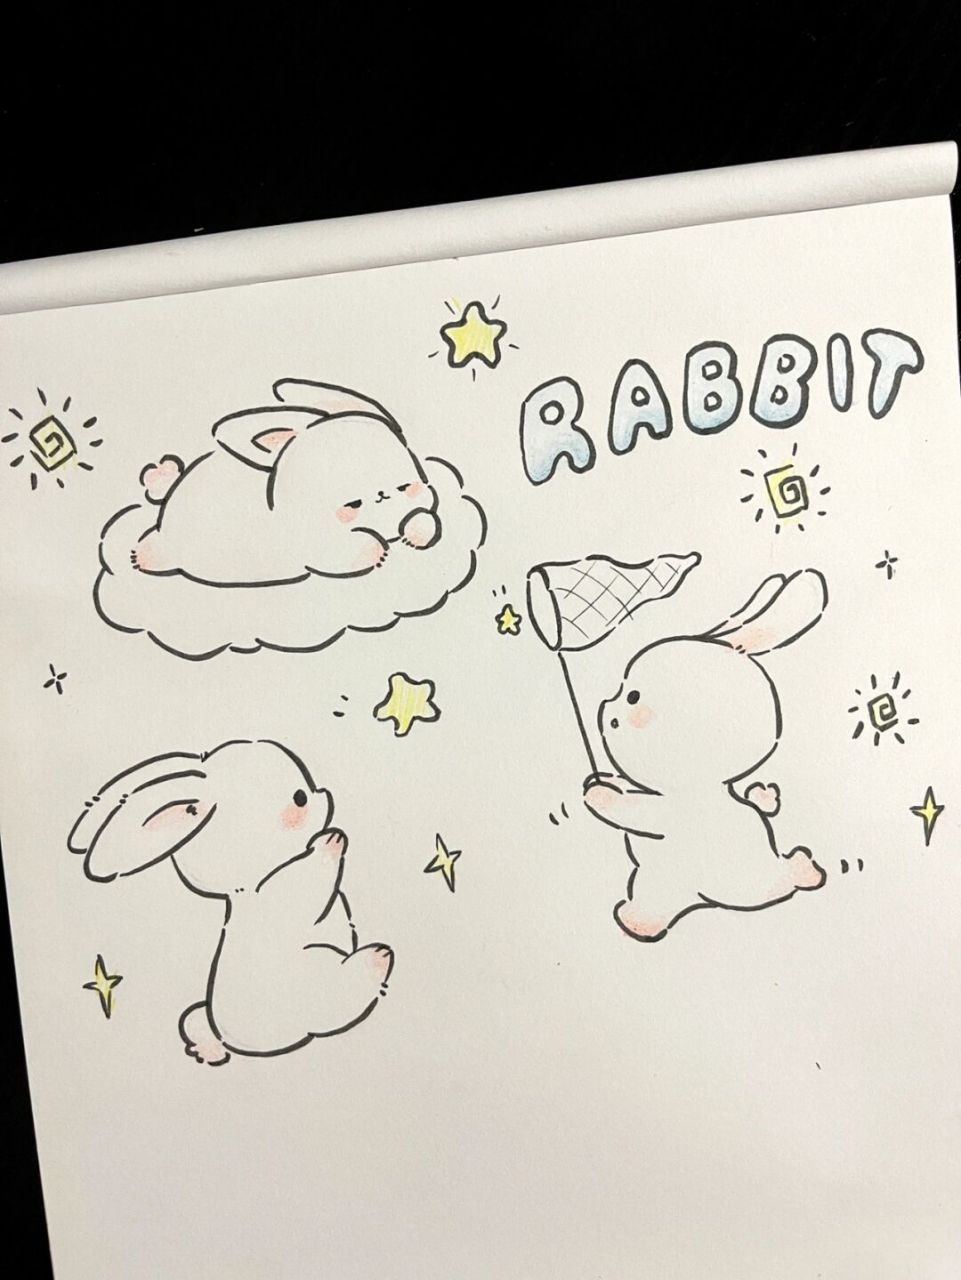 小兔子的简笔画 萌萌图片